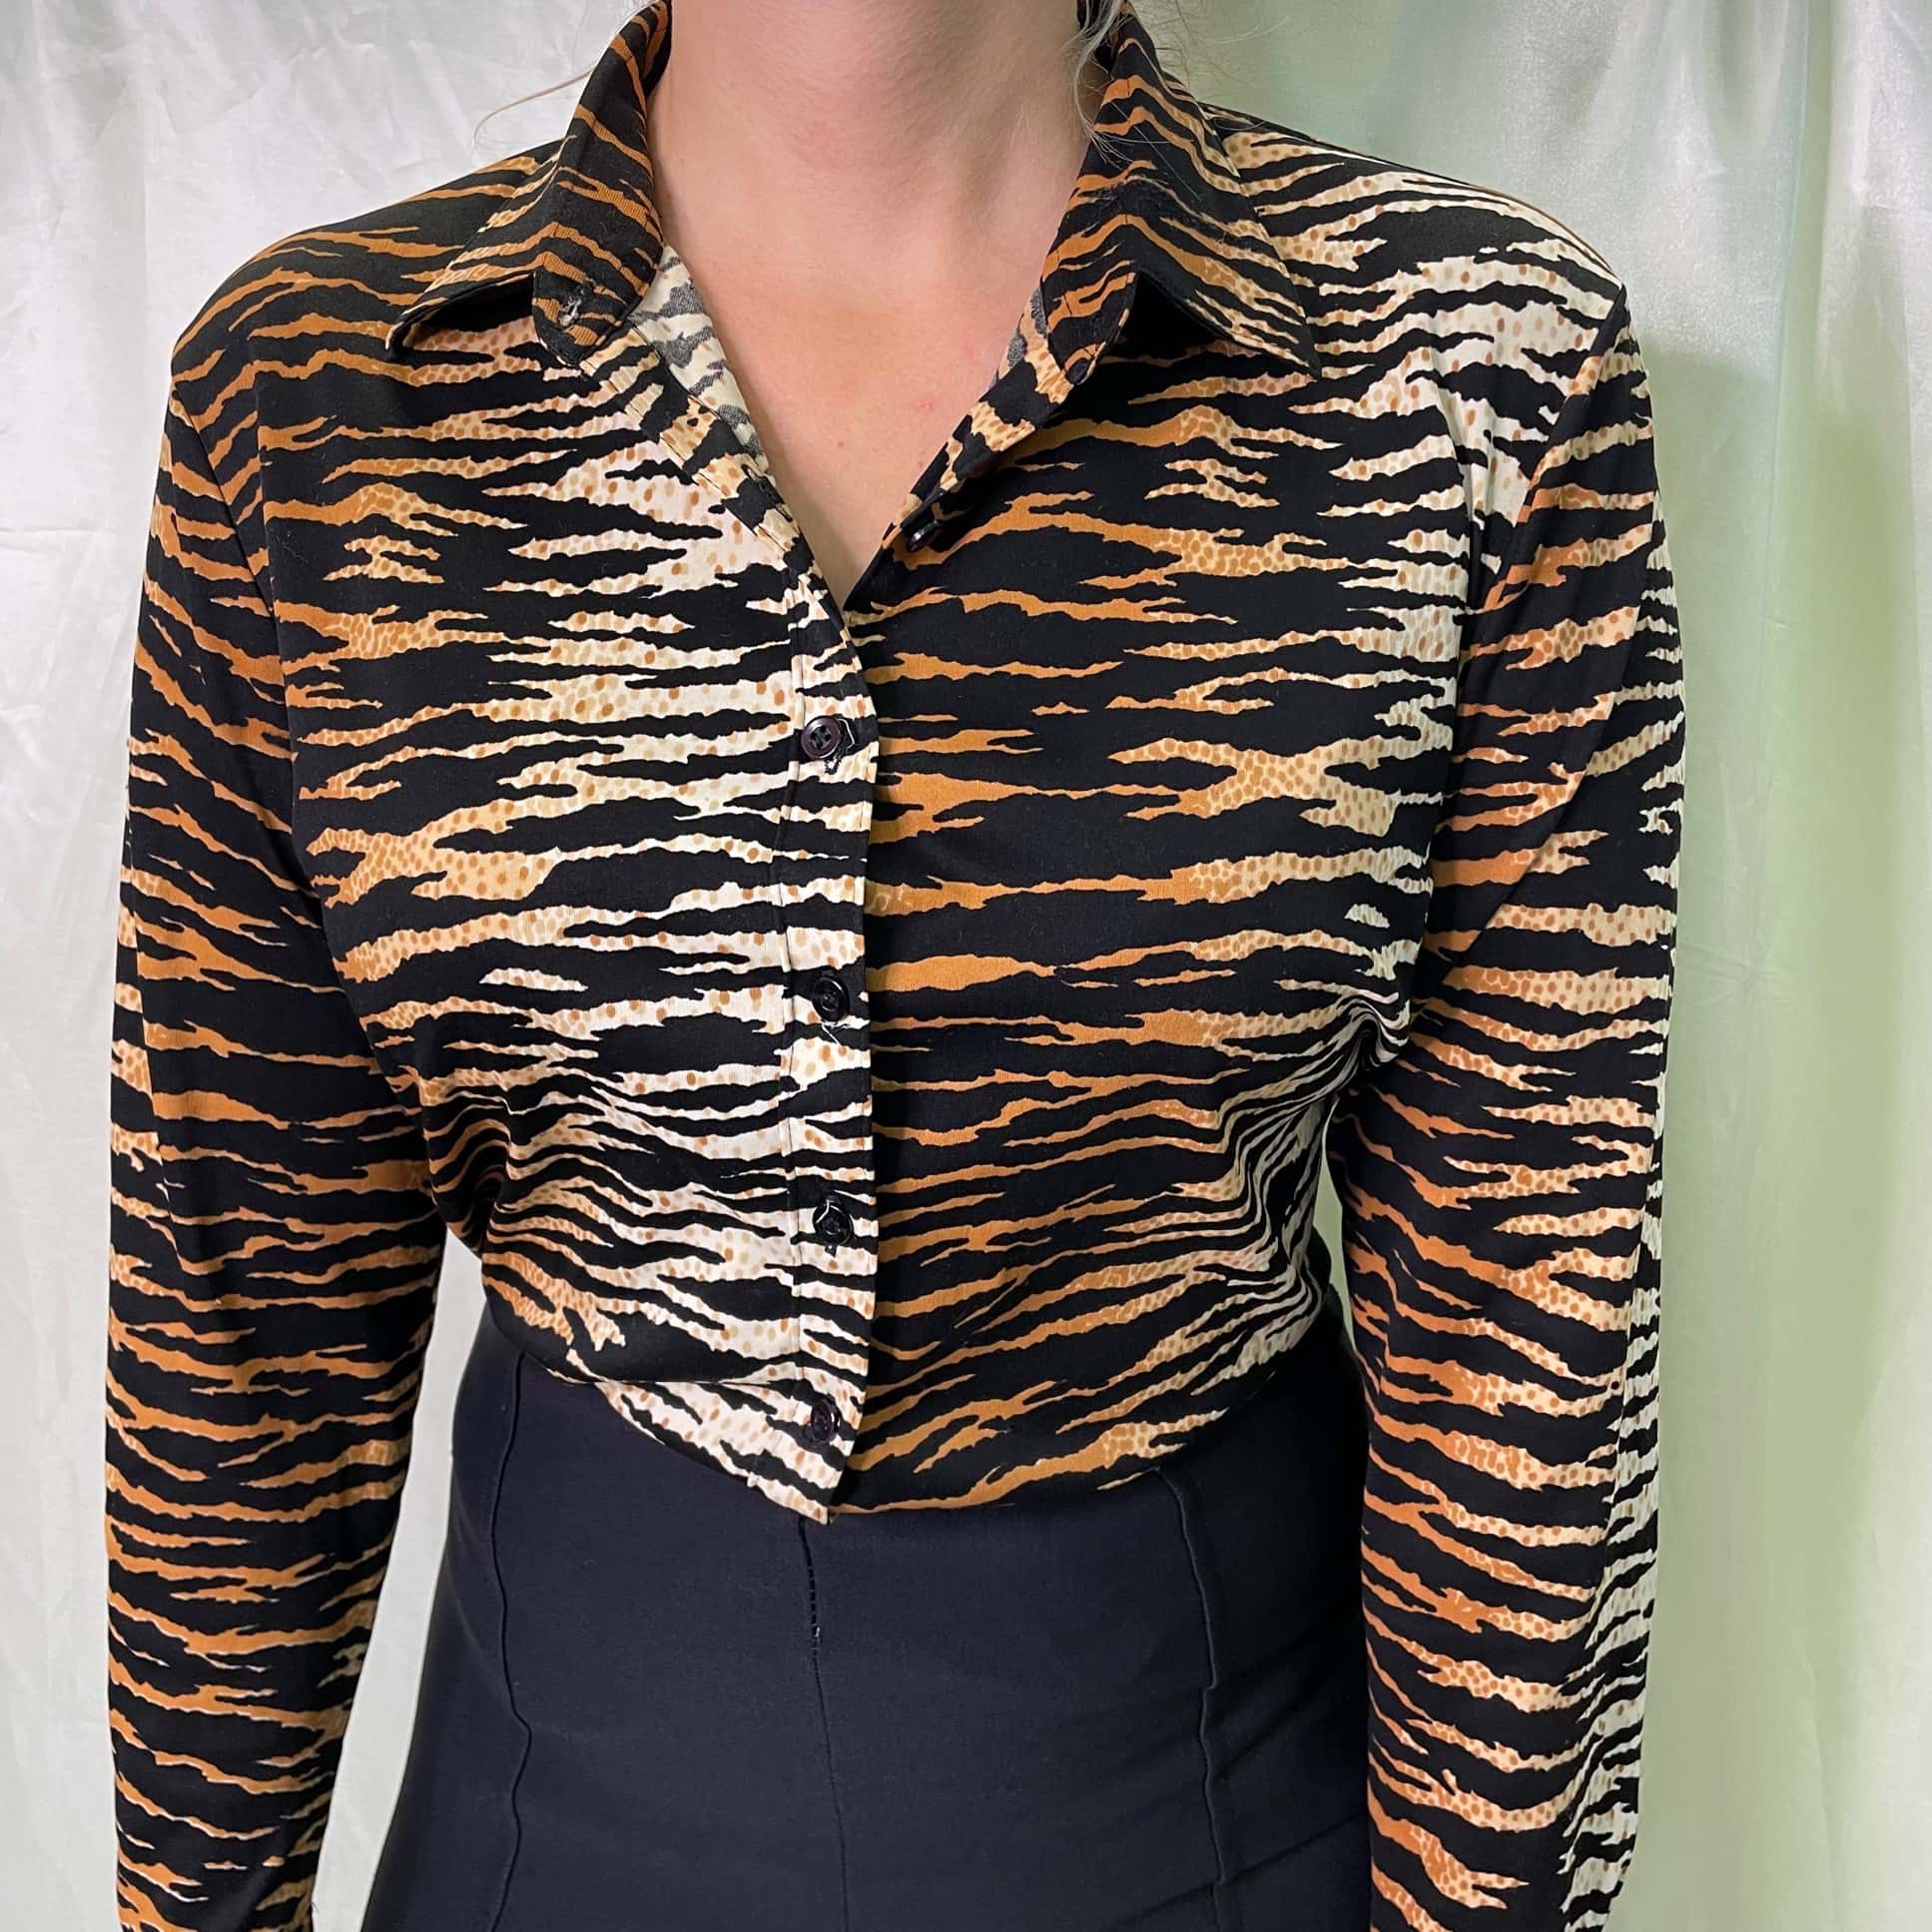 Tiger print blouse - Szerkó Budapest